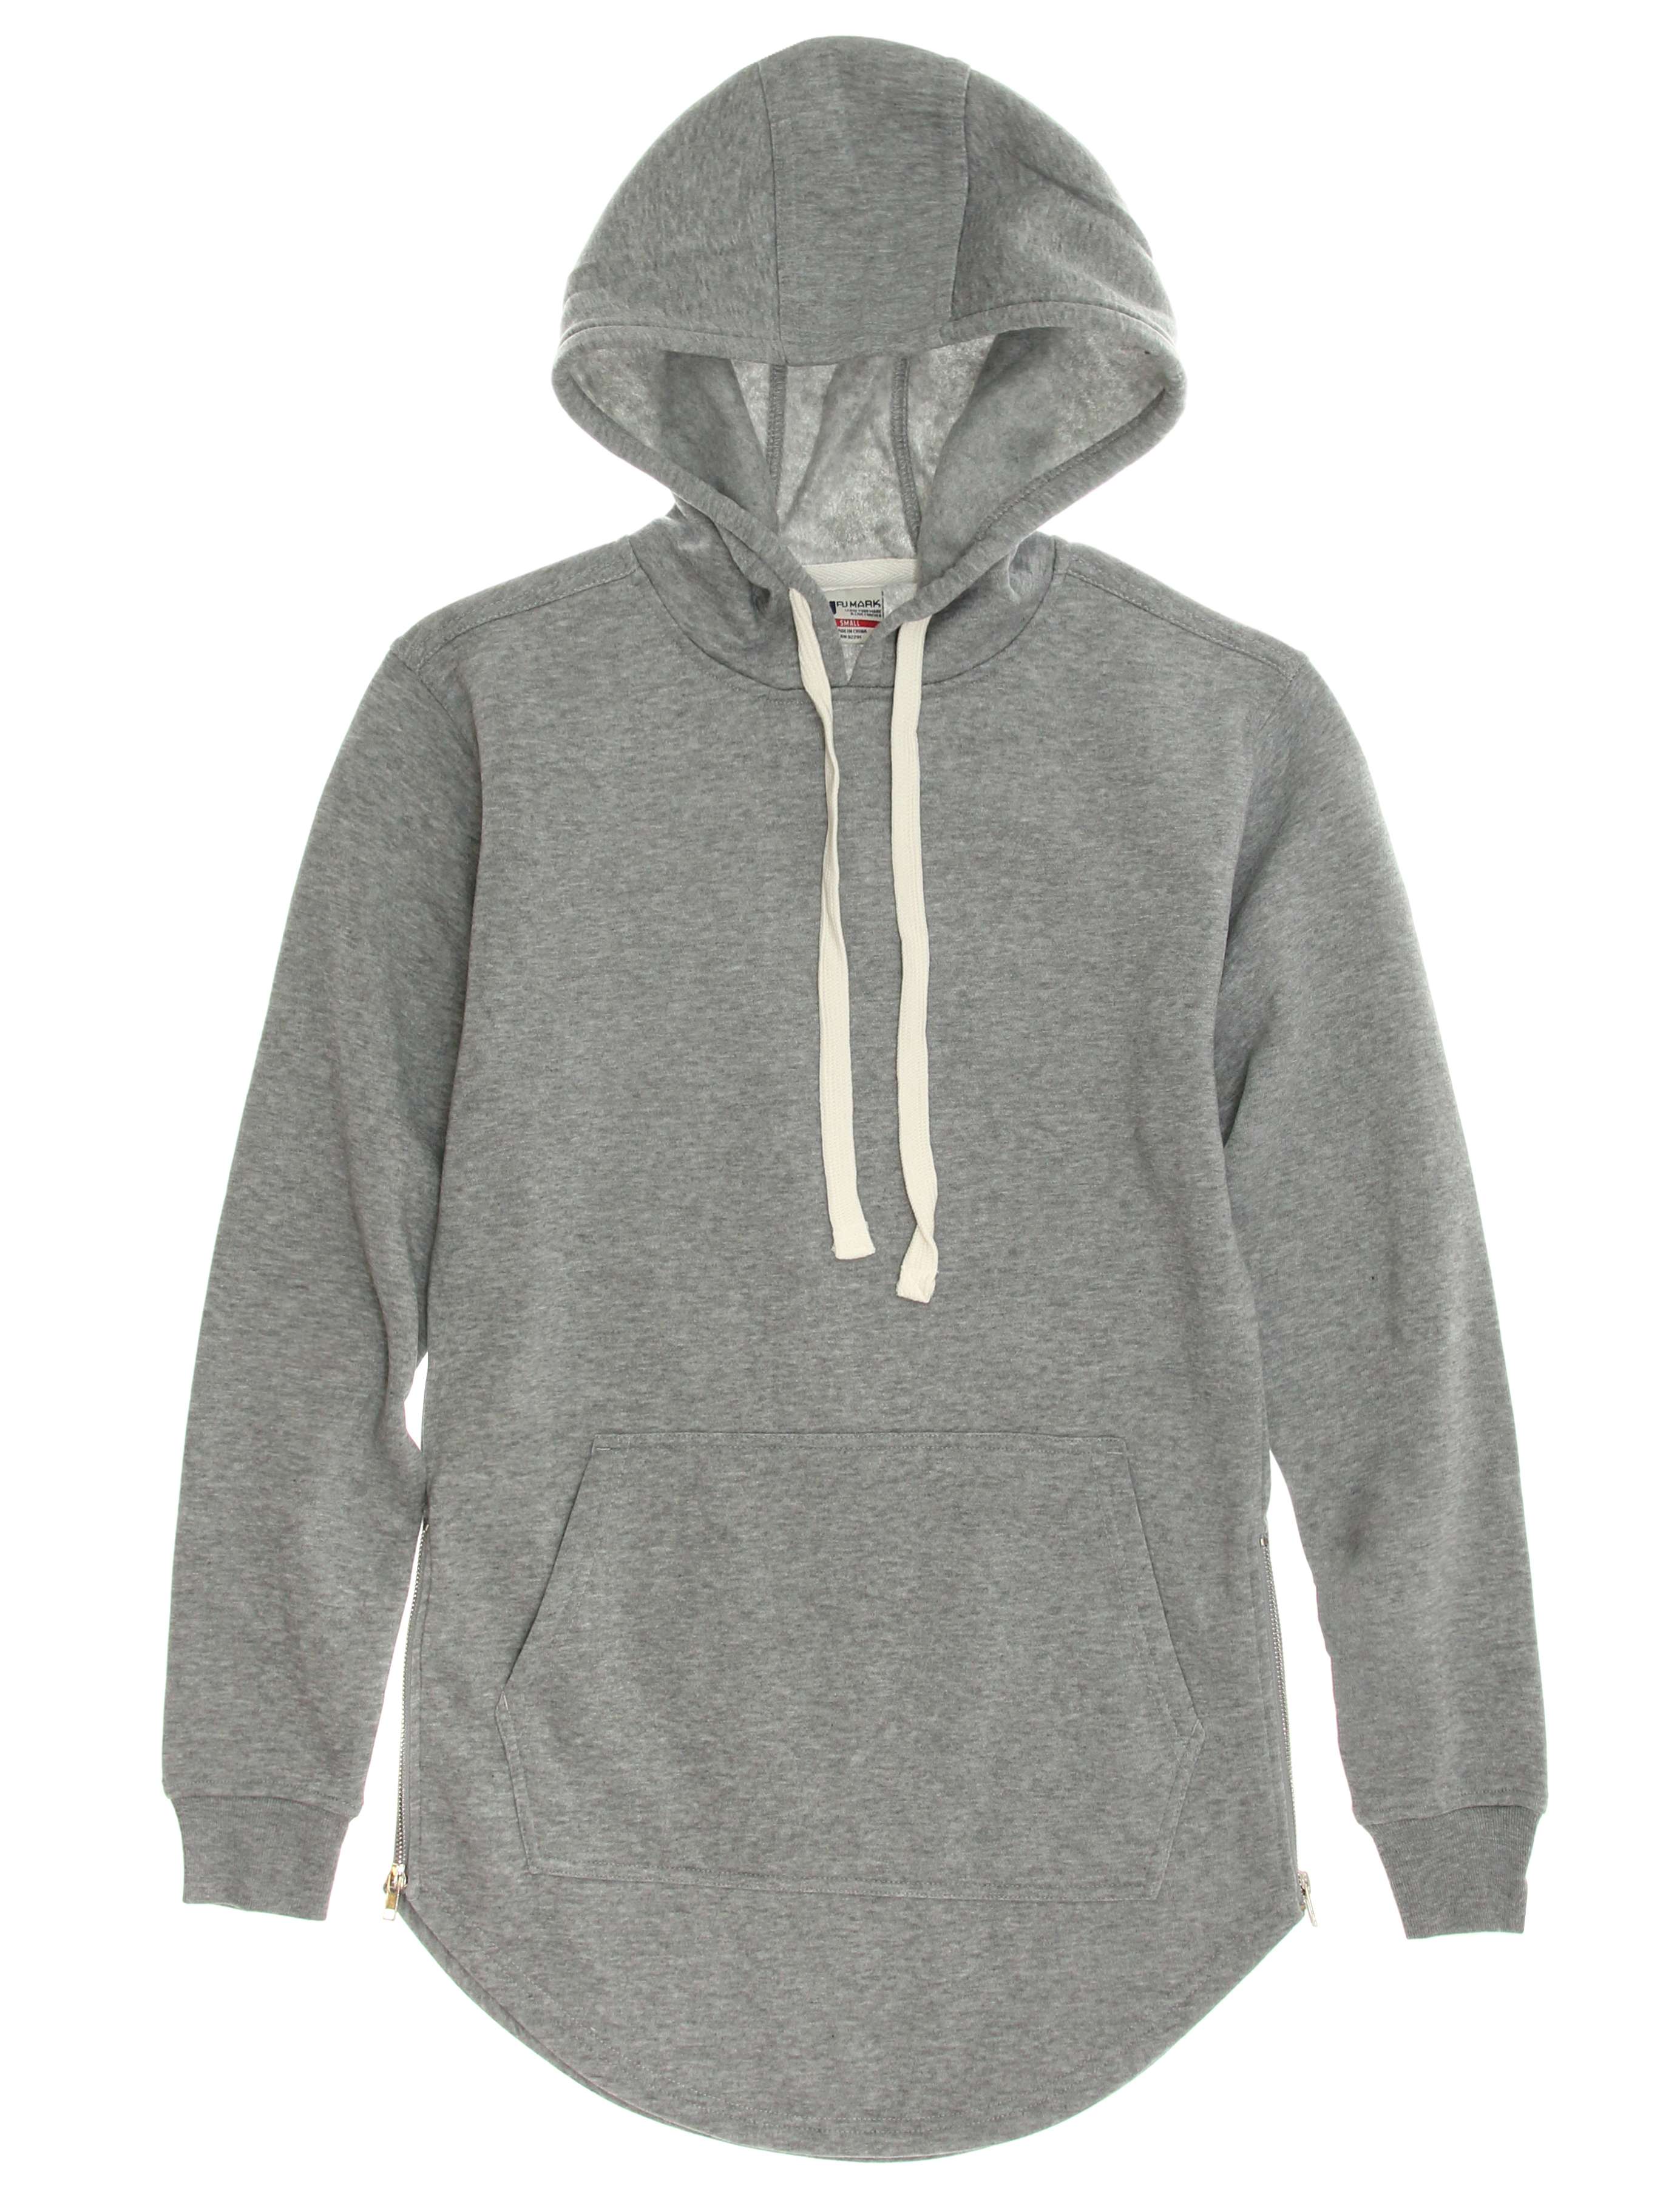 PJ Mark Men's Tech Fleece Longline Hoodie Sweatshirt With Side Zippers ...